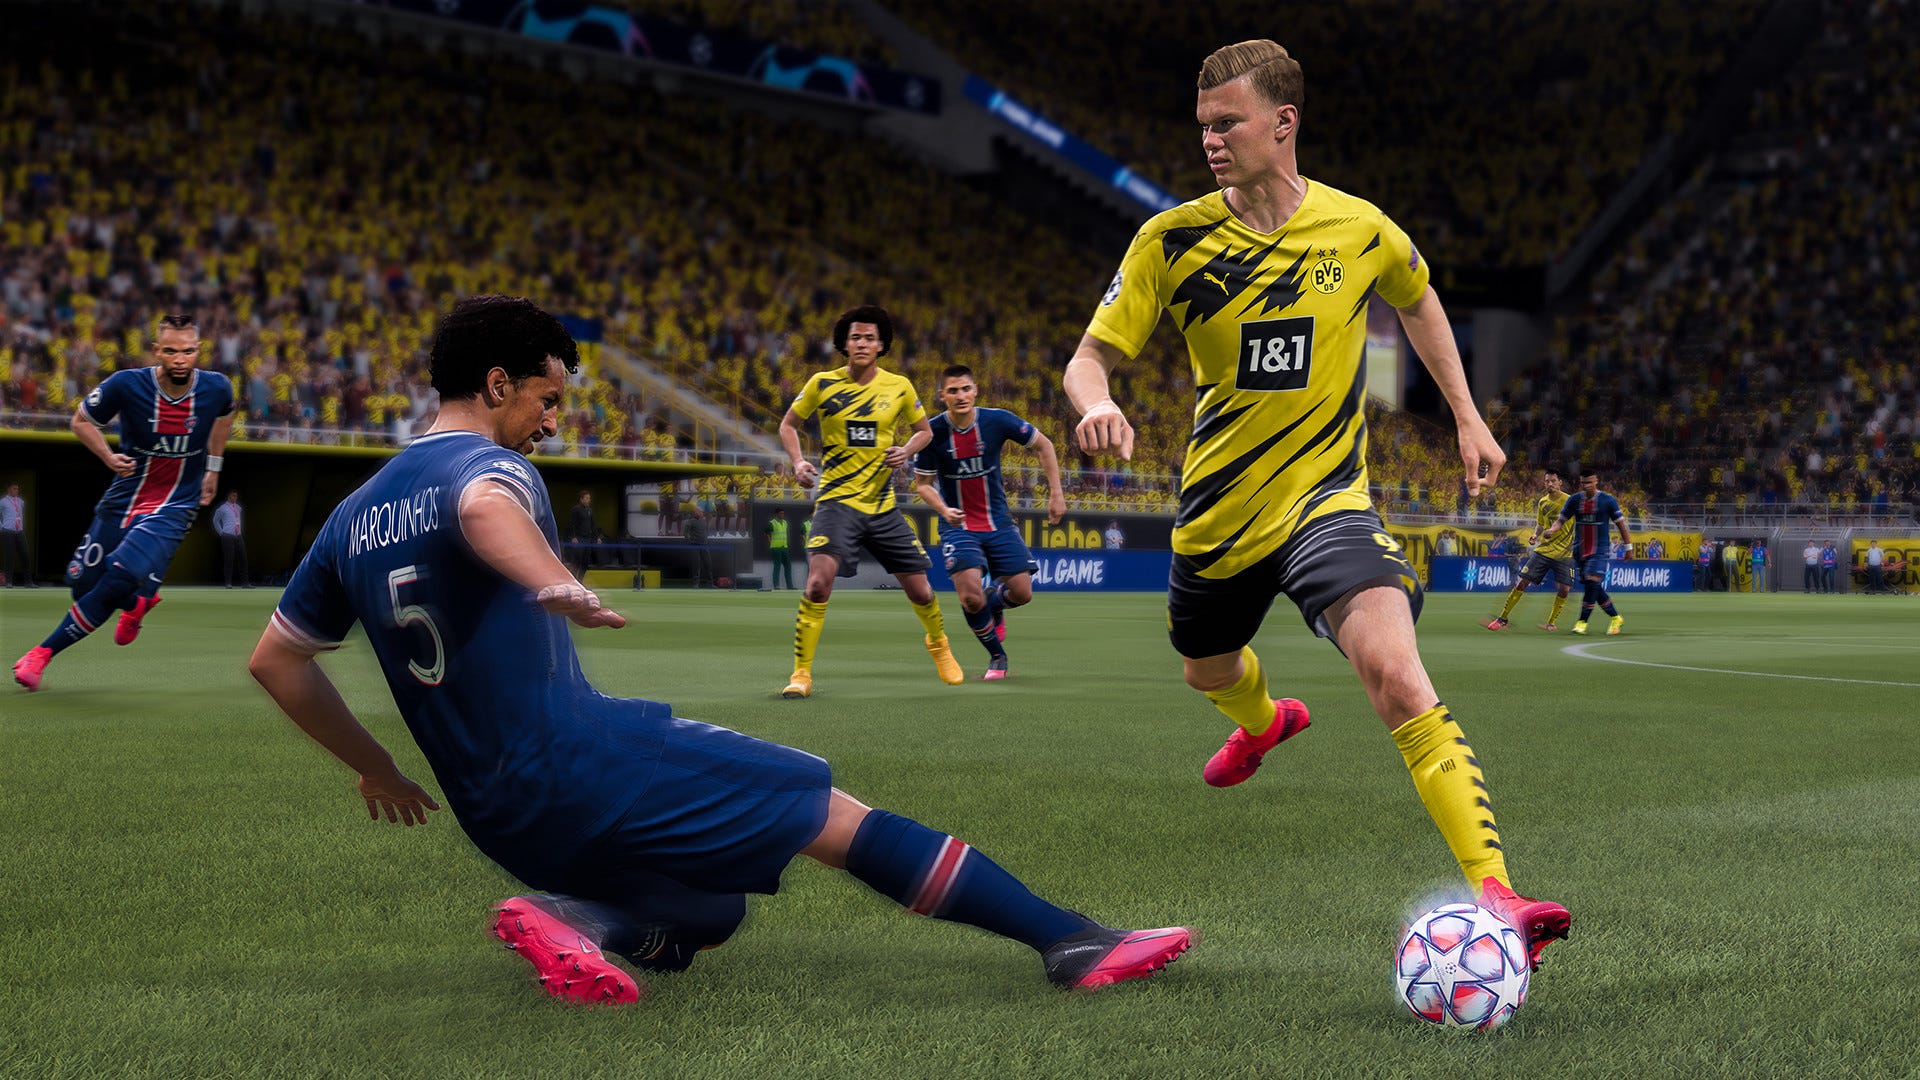 FIFA 22: jogadores bons e baratos para o modo Carreira, fifa